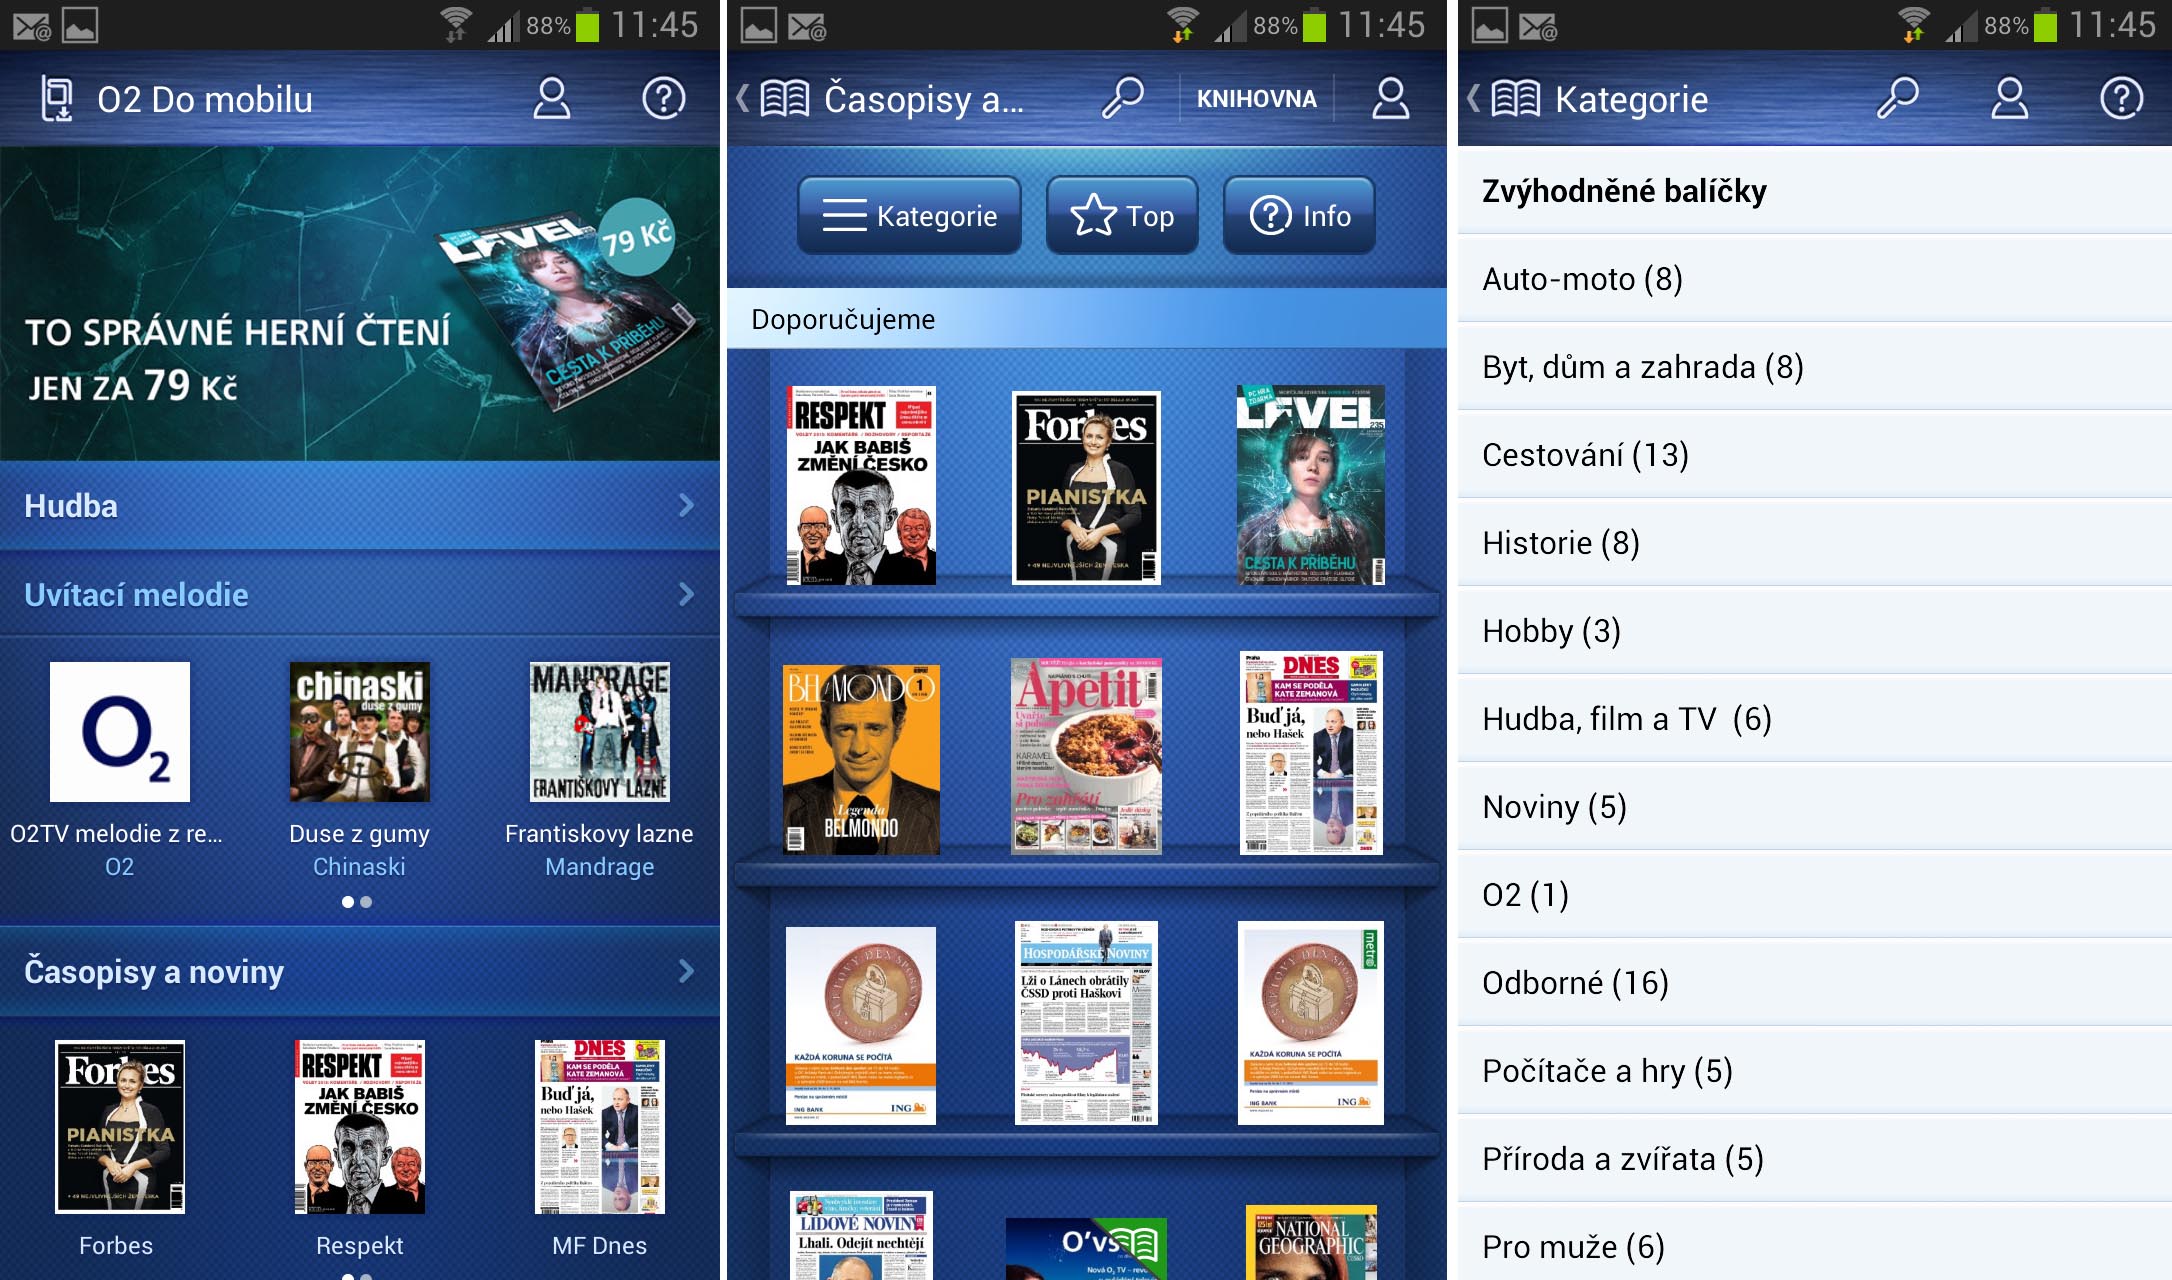 Aplikace O2 Do mobilu, jejíž součástí je i nabídka novin a časopisů O2 Čtení